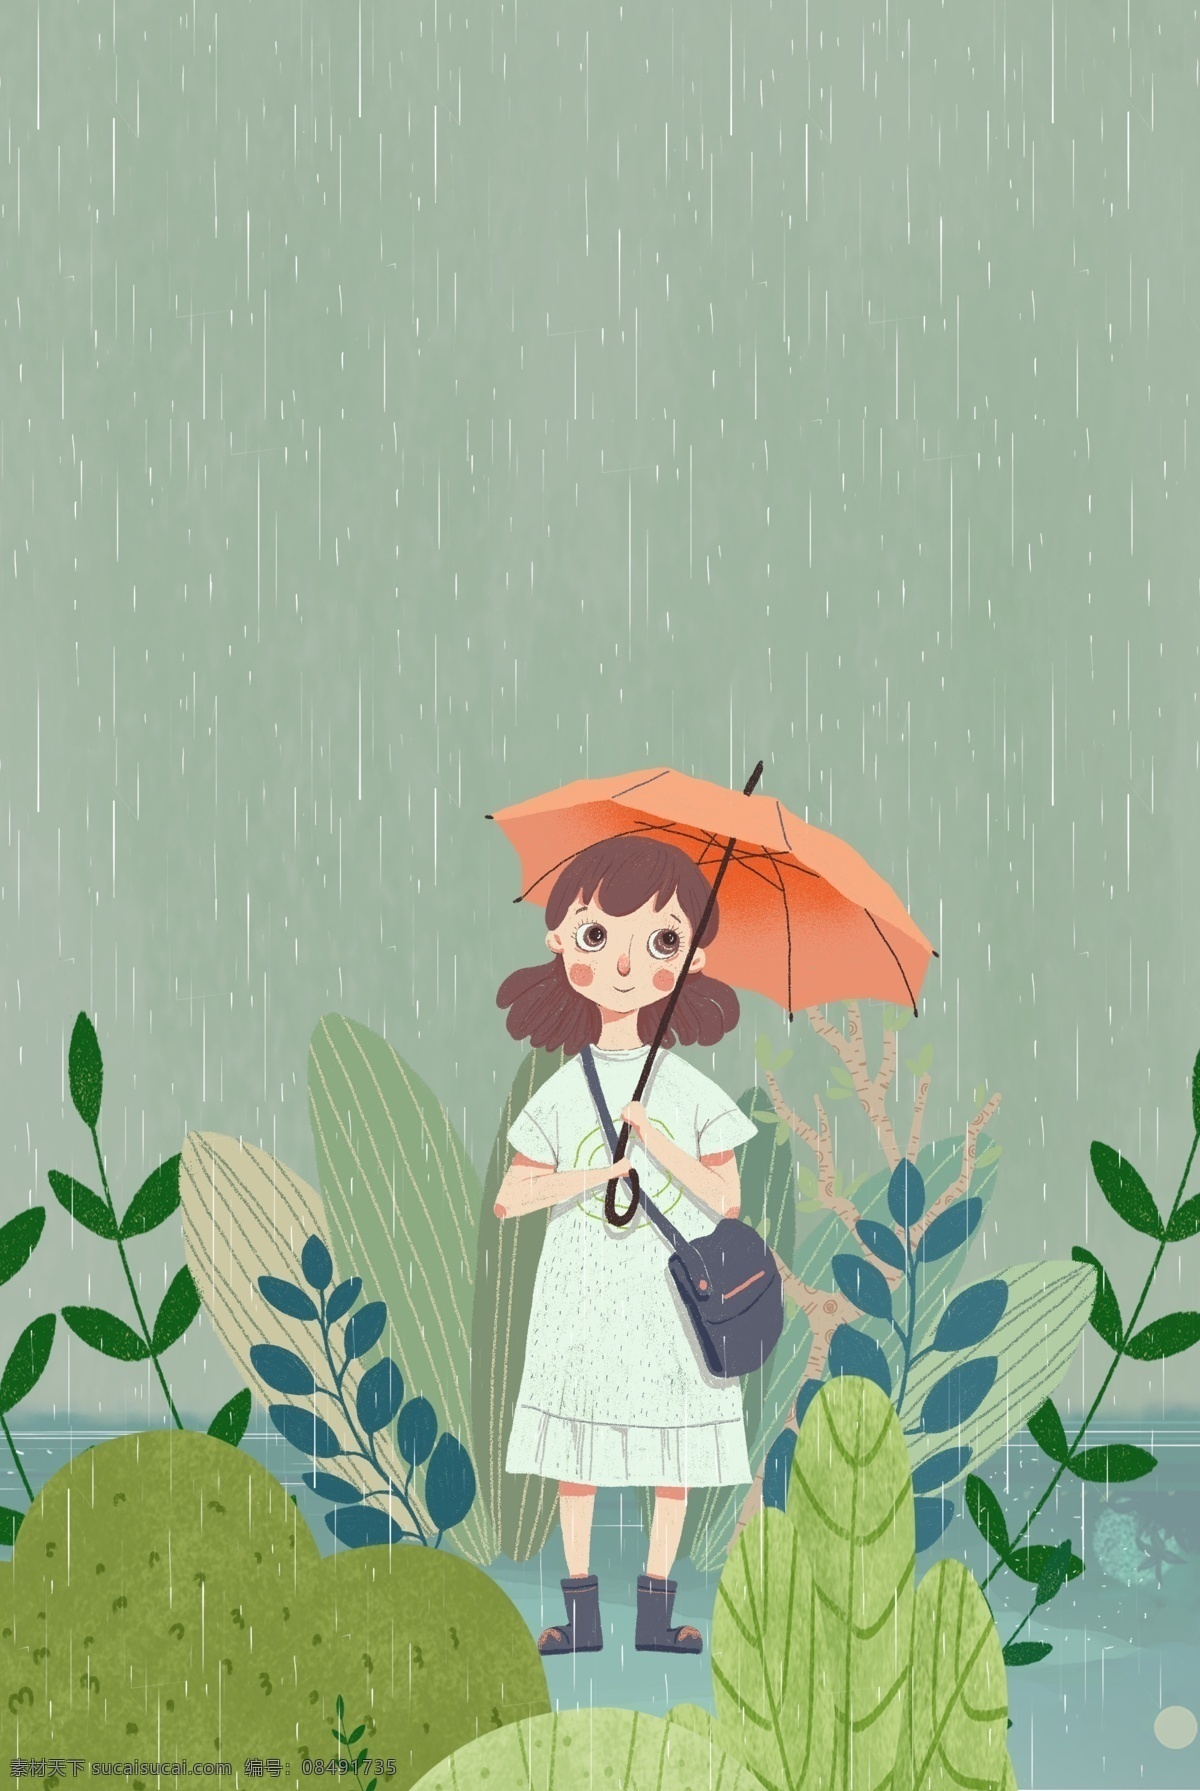 二十四节气 之春 分 细雨 出行 女孩 节气 春分 传统节气 植物 插画风 促销海报